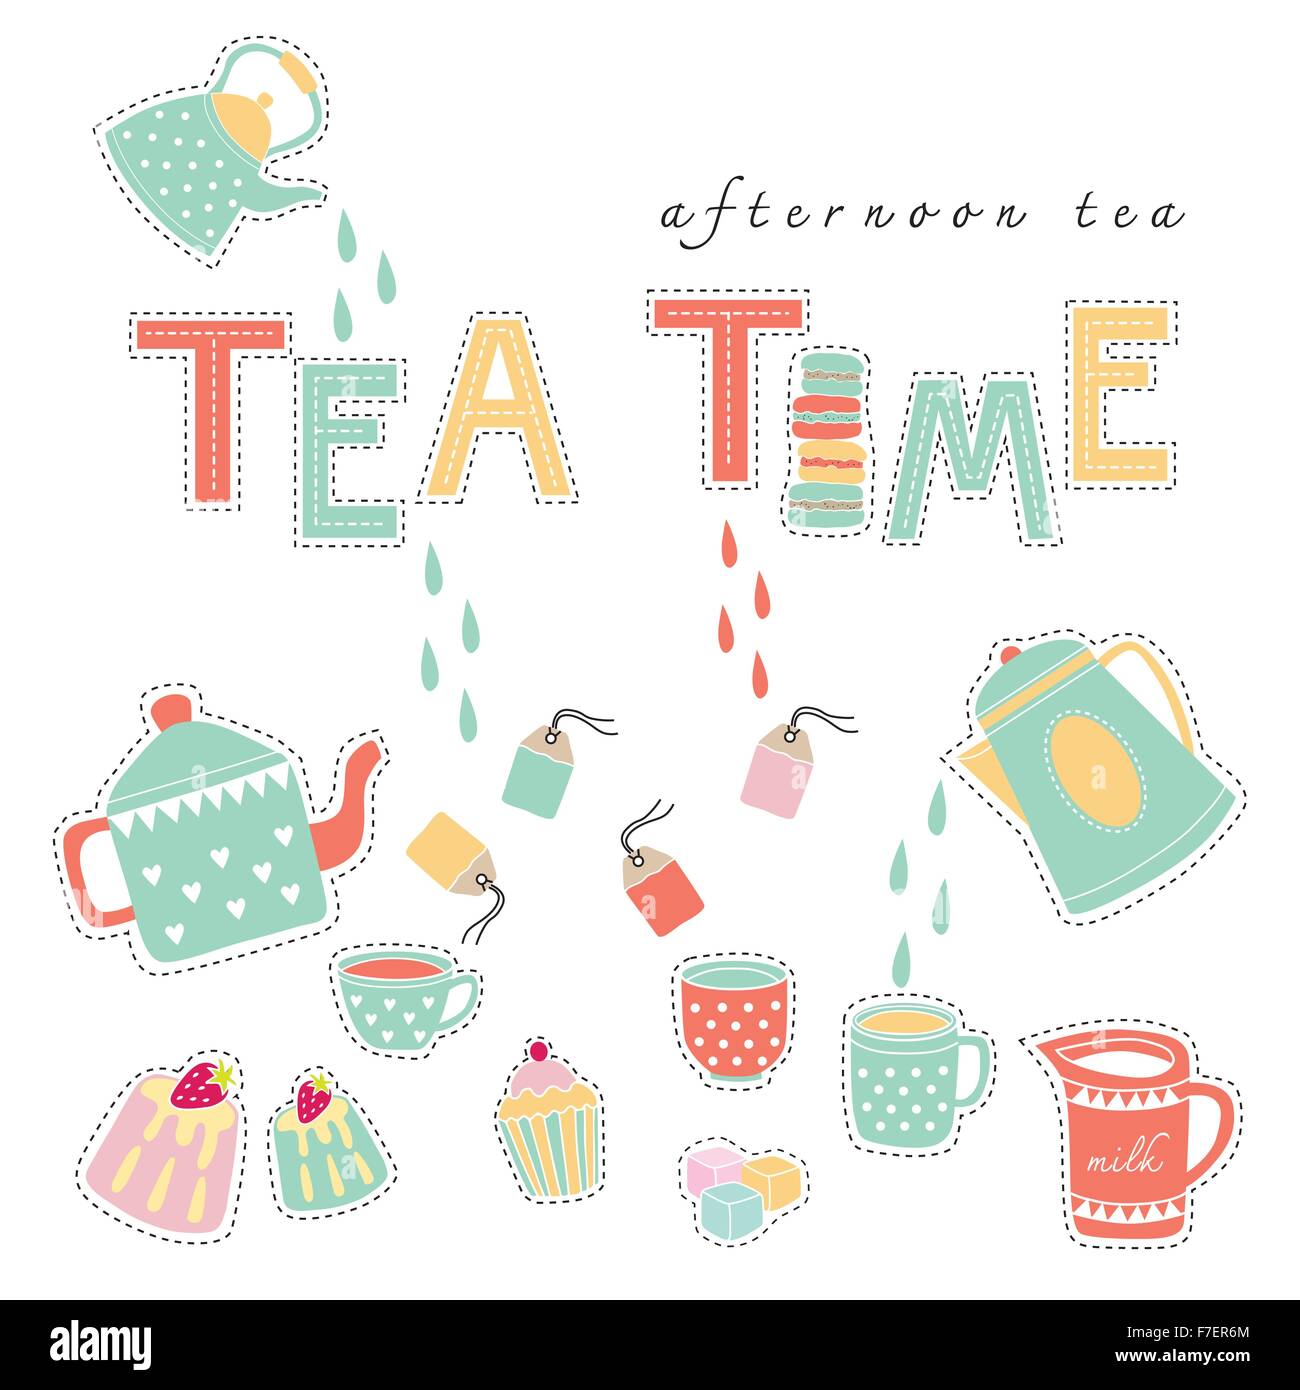 L'heure du thé le thé en après-midi doodle vecteur de couleur pastel illustration sur fond blanc théière, tasse de thé, de sachet à thé, gâteau Illustration de Vecteur